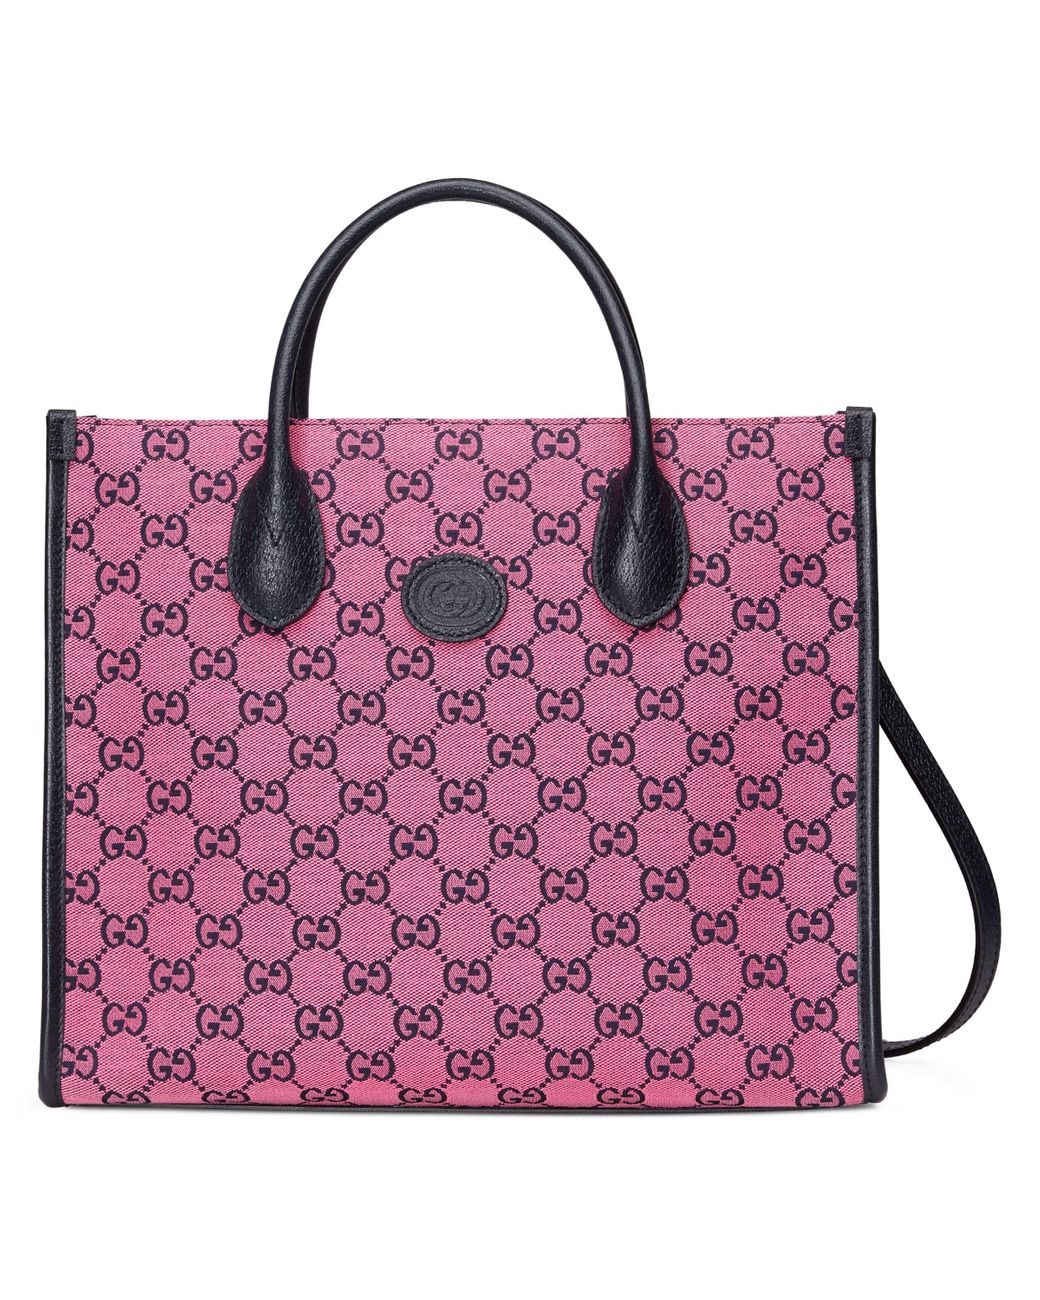 Gucci GG Multicolour Small Tote Bag in Pink